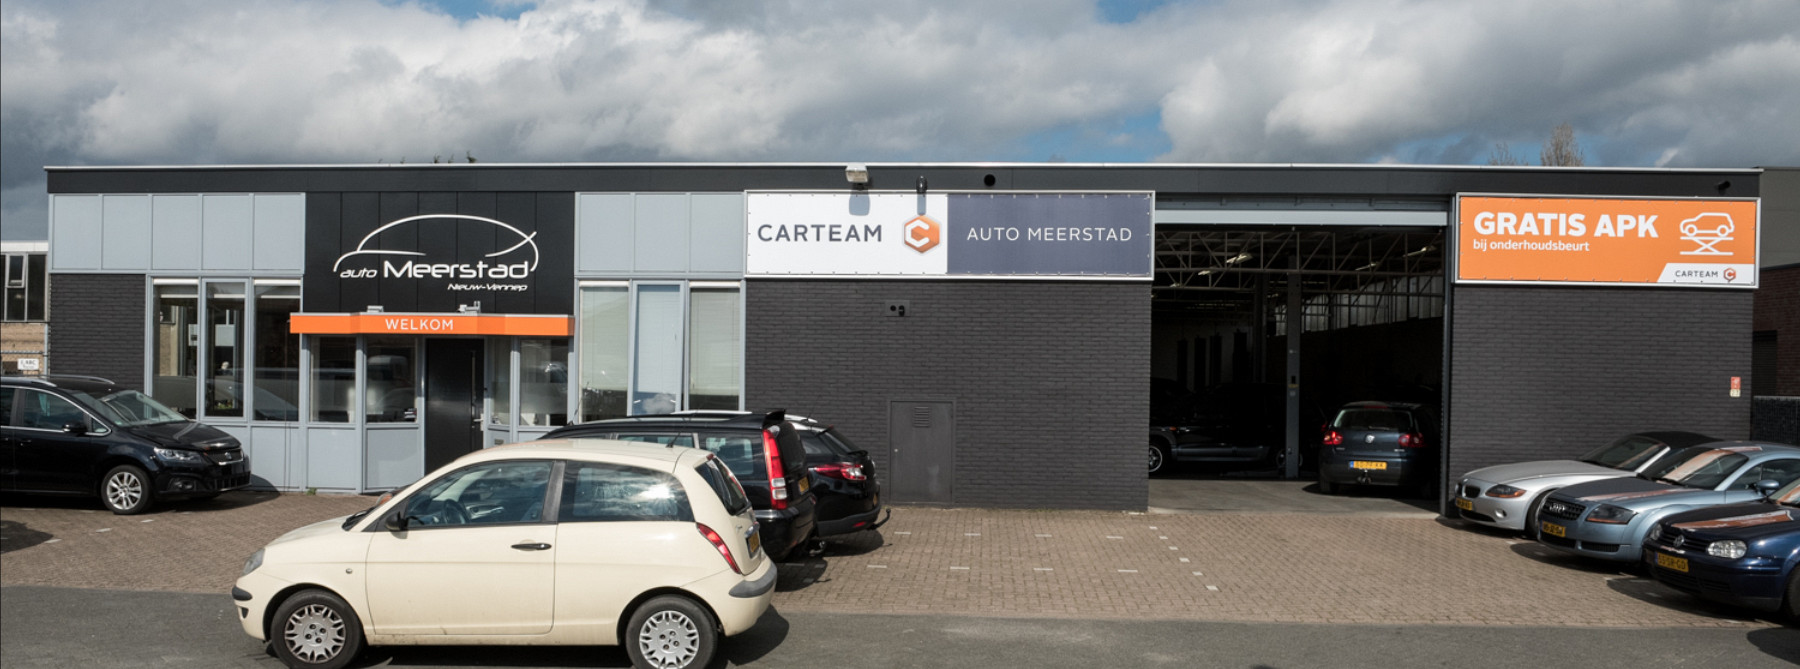 Carteam Autobedrijf Auto Meerstad